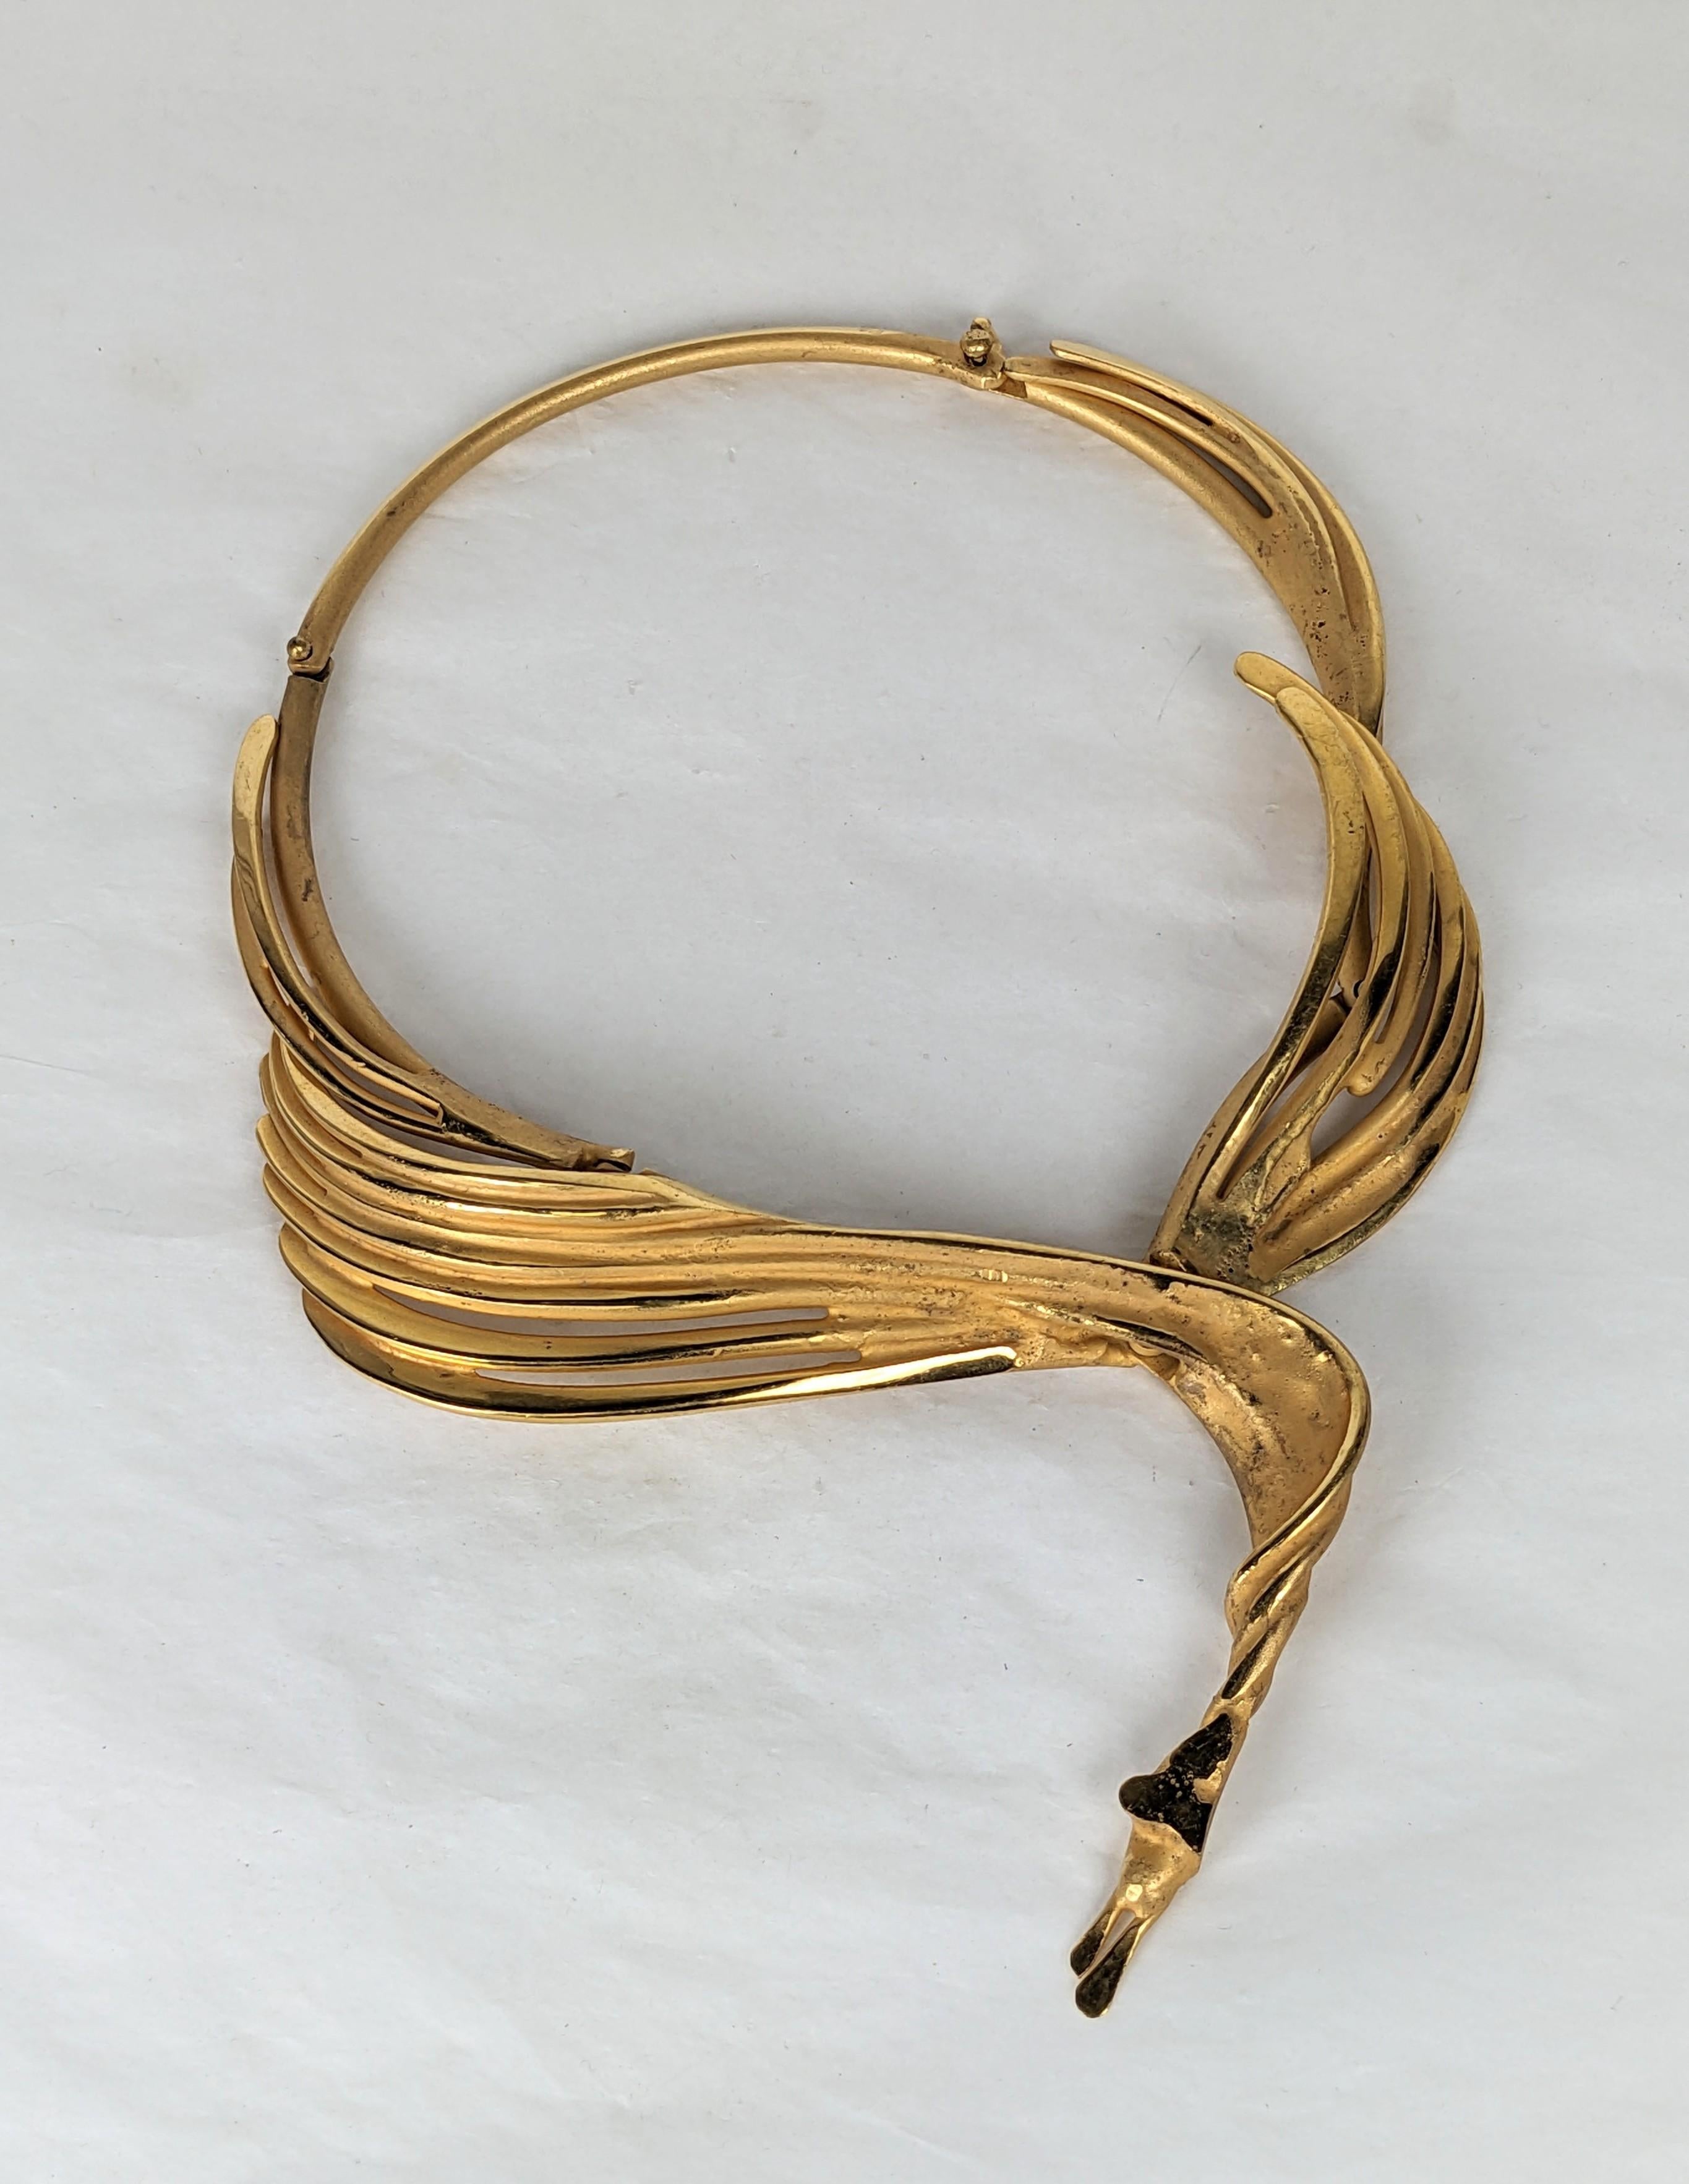 Großes und dramatisches französisches, geflügeltes Bronze-Halsband im brutalistischen Stil aus den 1980er Jahren. Vom Hersteller (Bonillez?) signiert und in einer Pariser Galerie in den 1980er Jahren erworben.
Handgefertigt und stark gegliedert mit